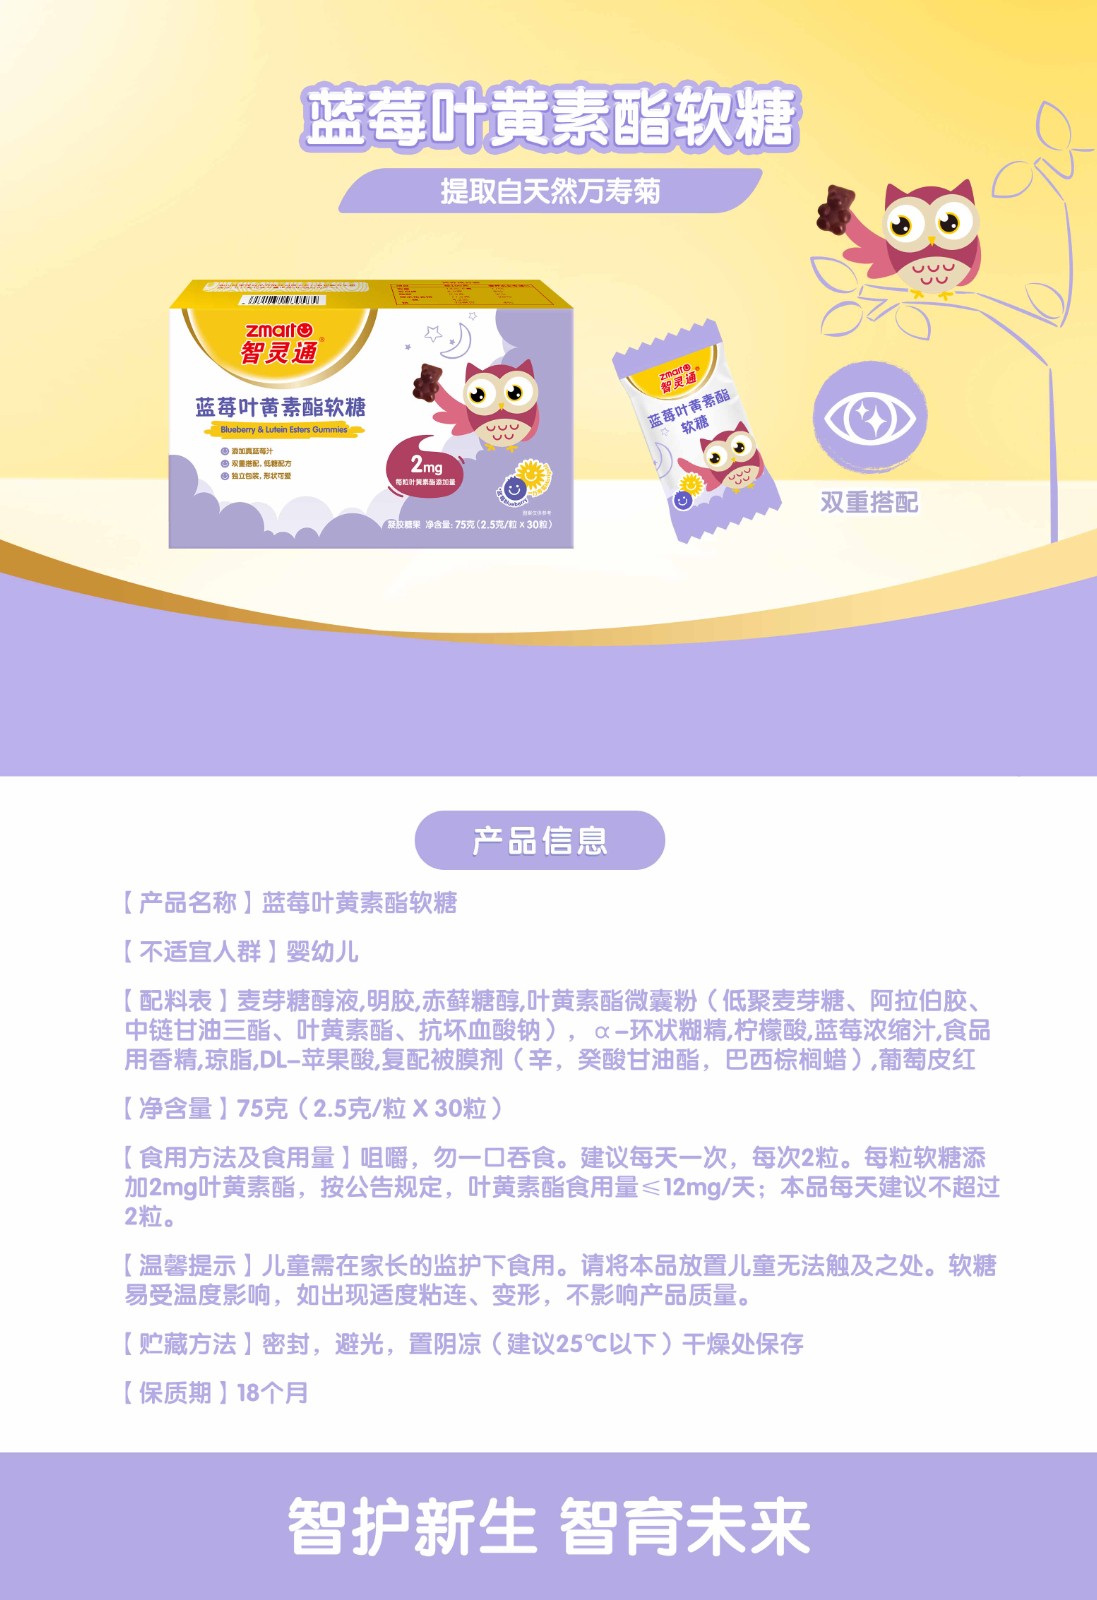 产品信息-蓝莓软糖-790-2-231205.jpg